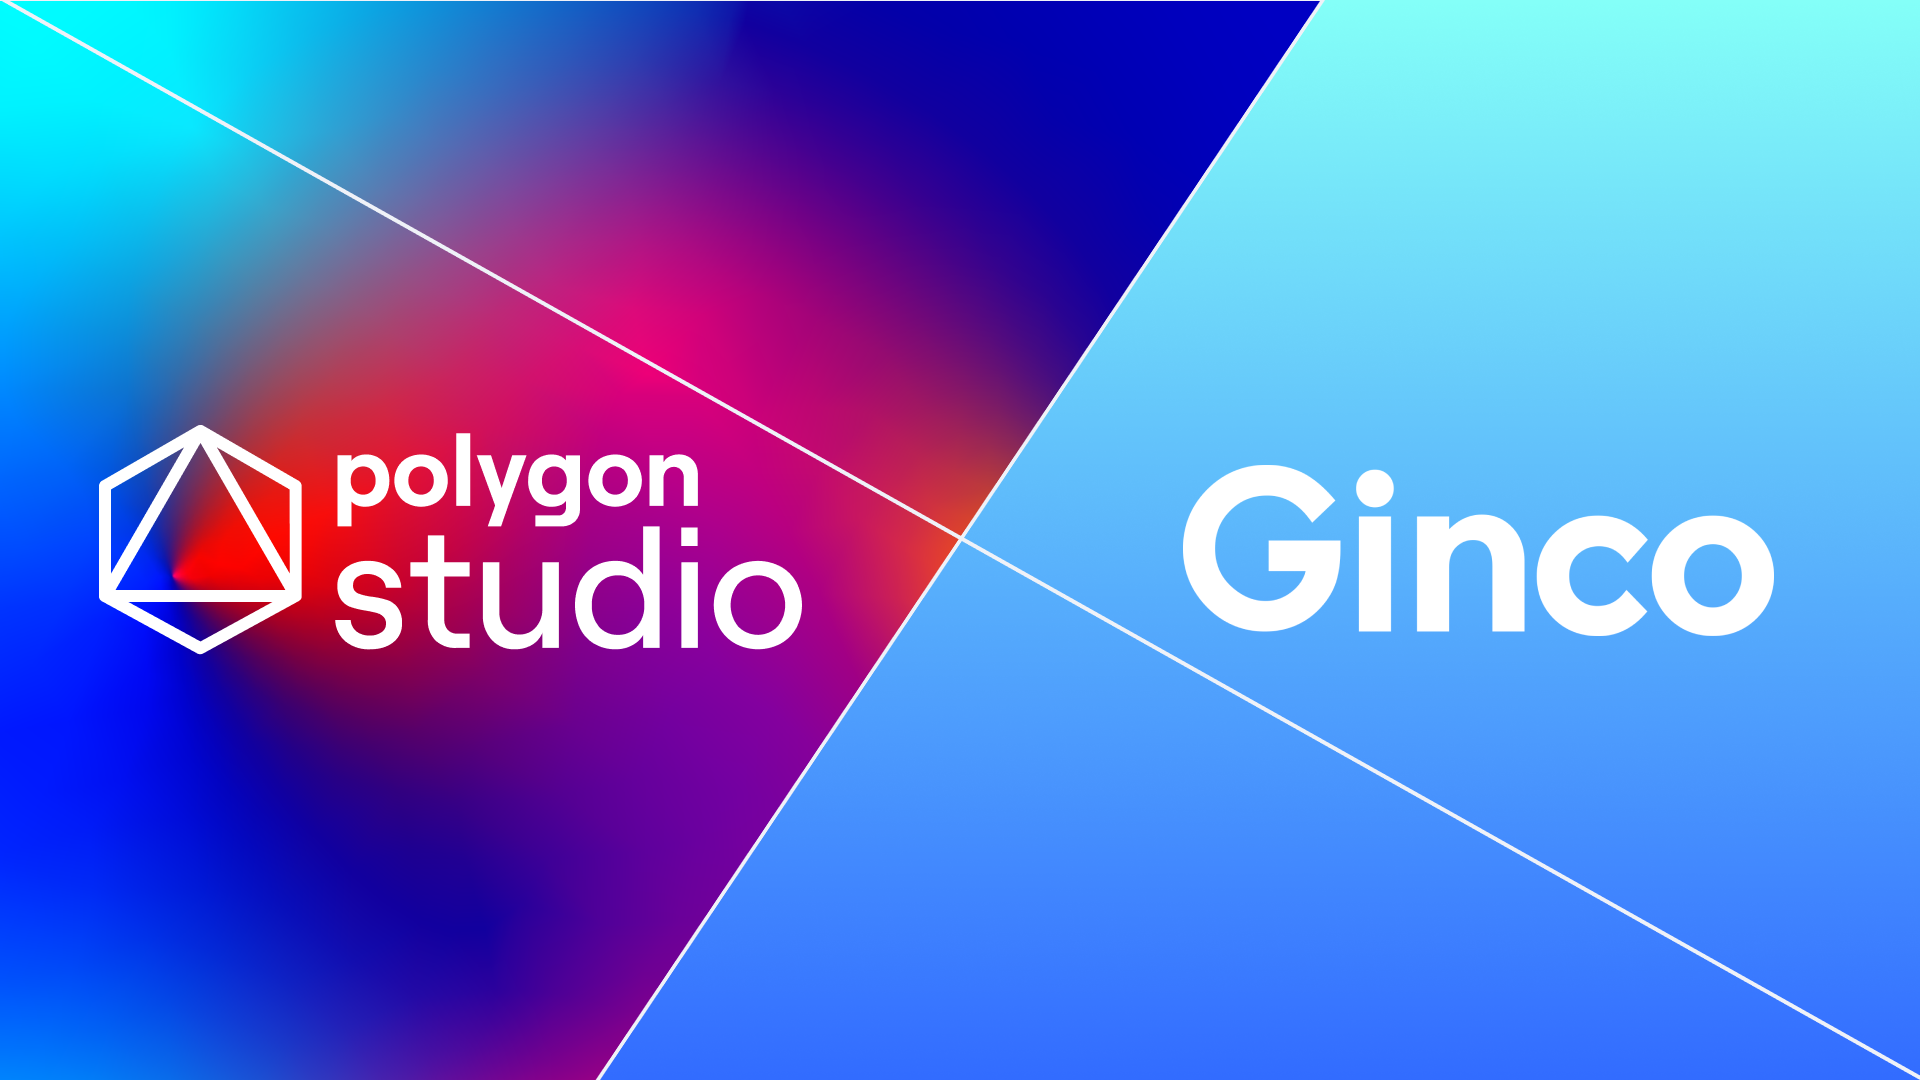 Ginco and polygon